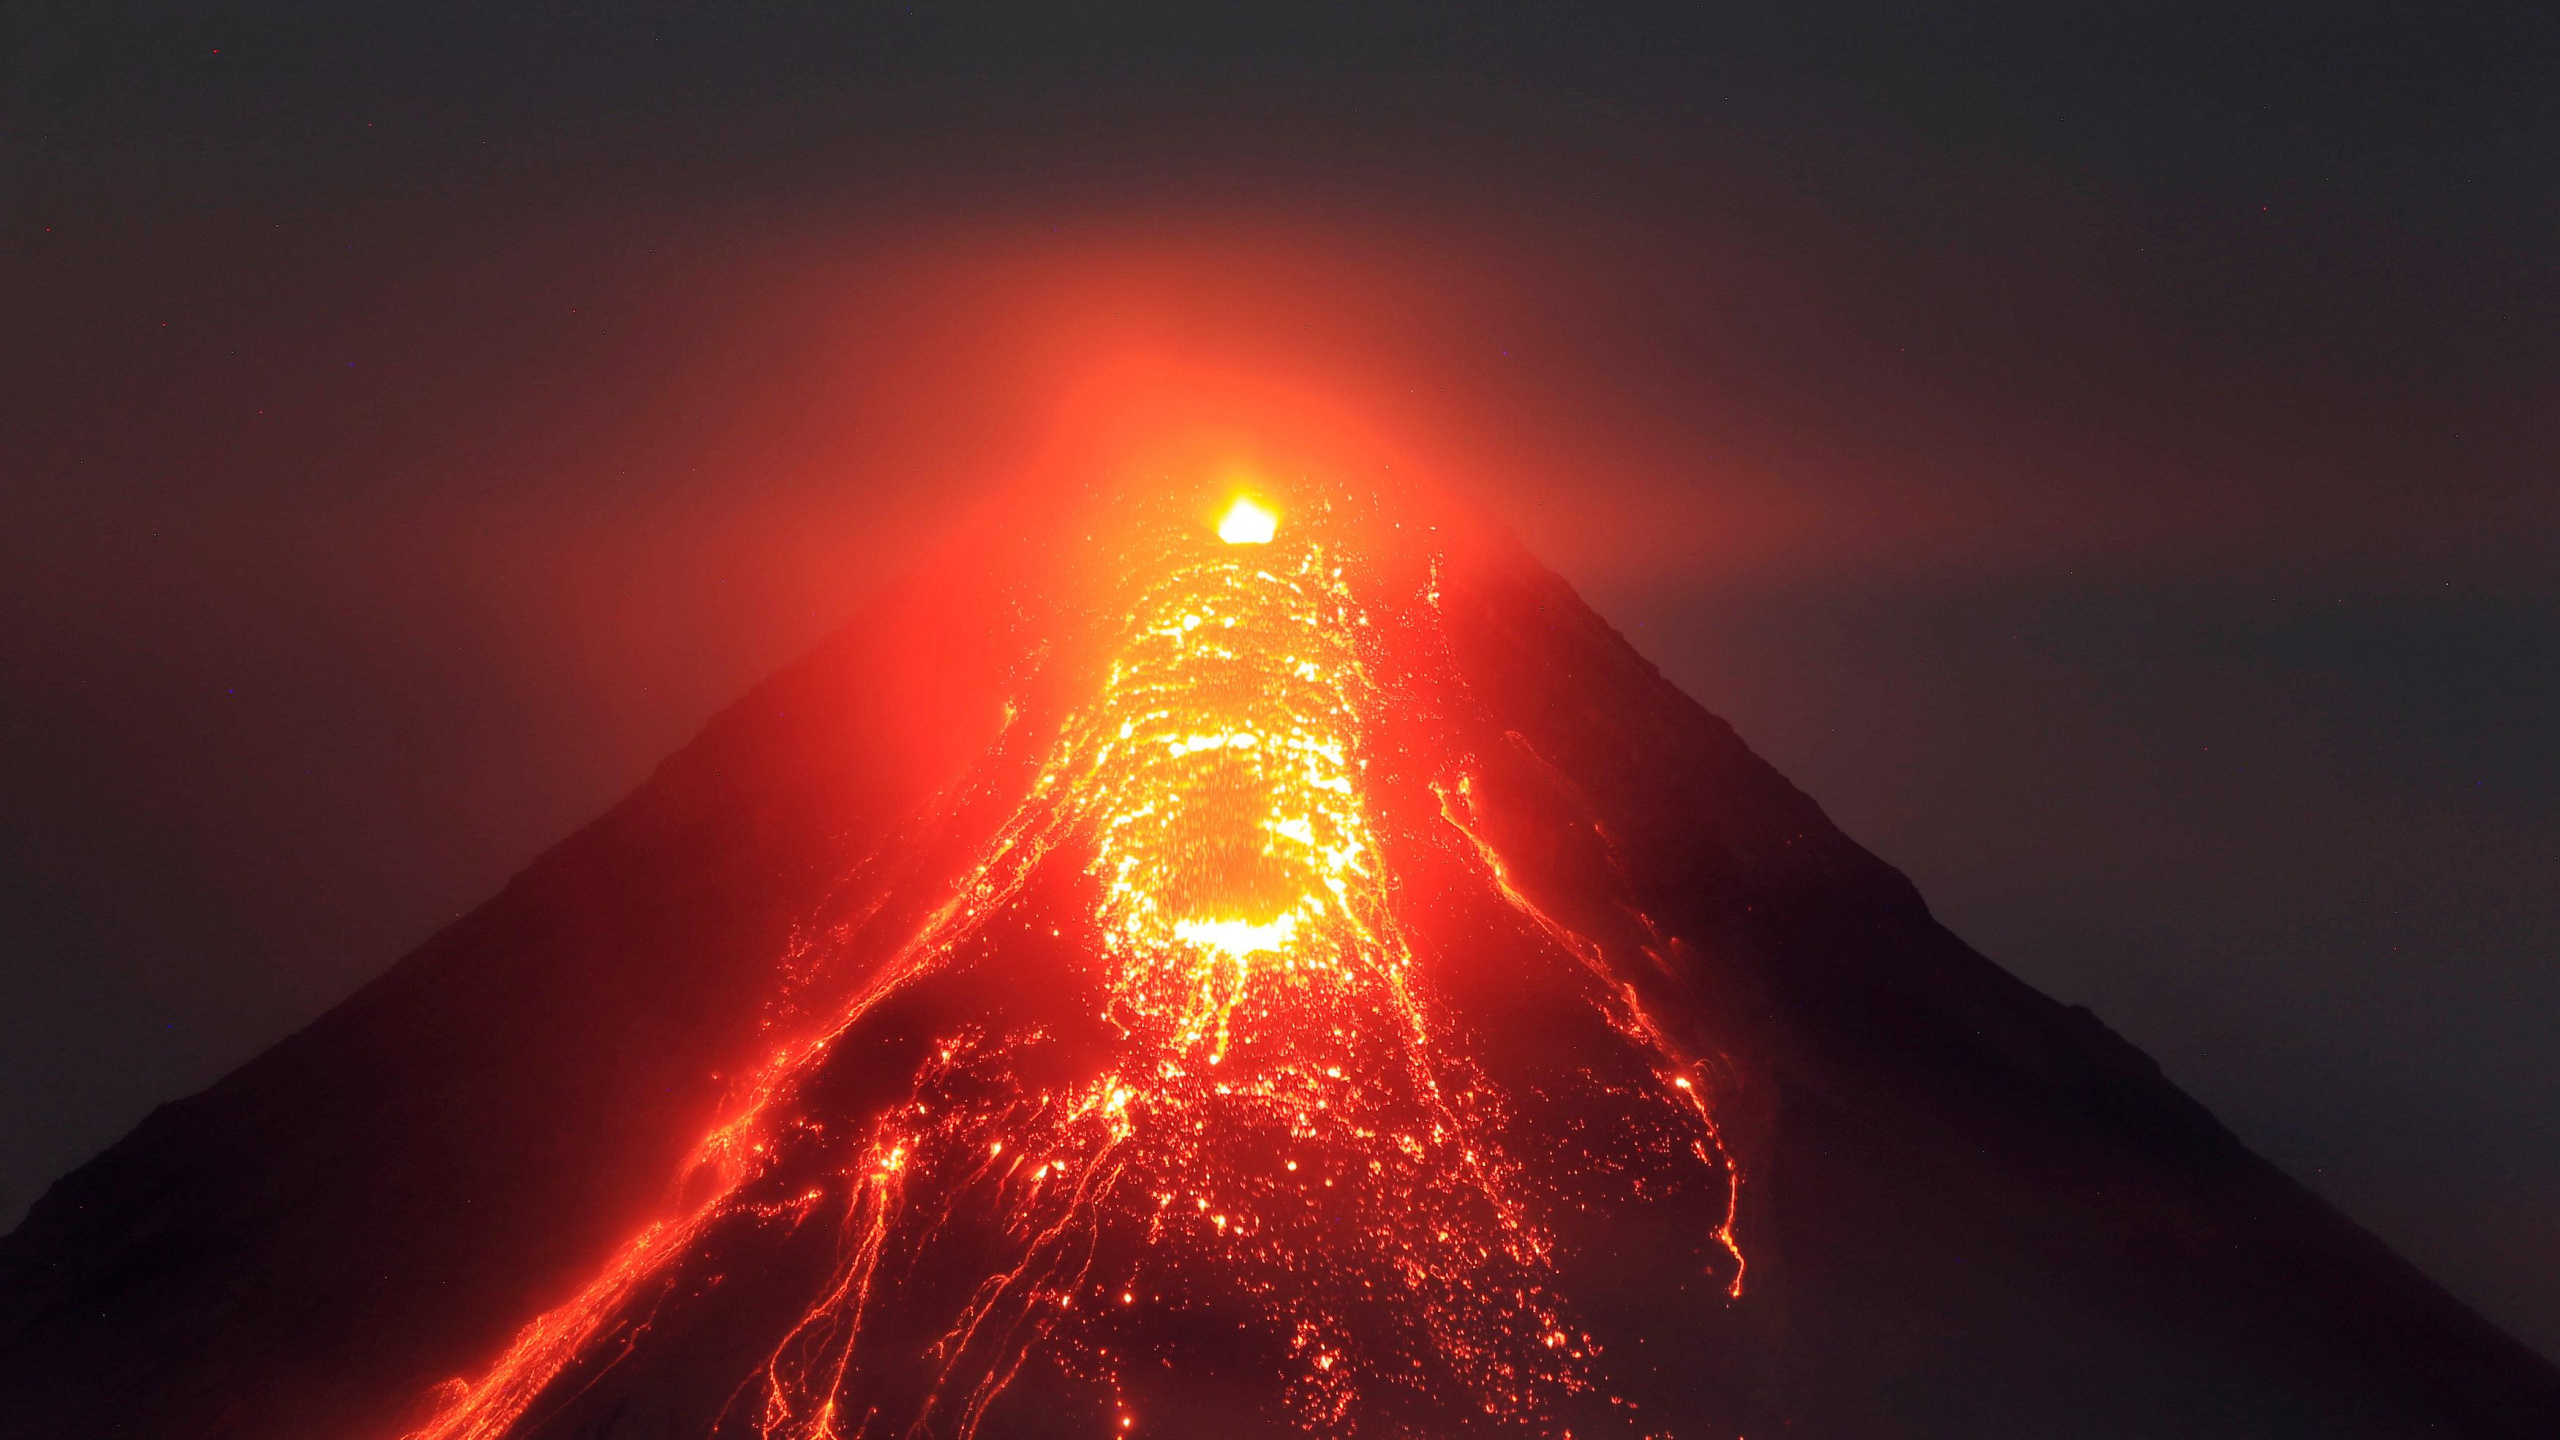 熔岩, 类型的火山爆发, 火山的地貌, 热, 熔岩圆顶 壁纸 2560x1440 允许